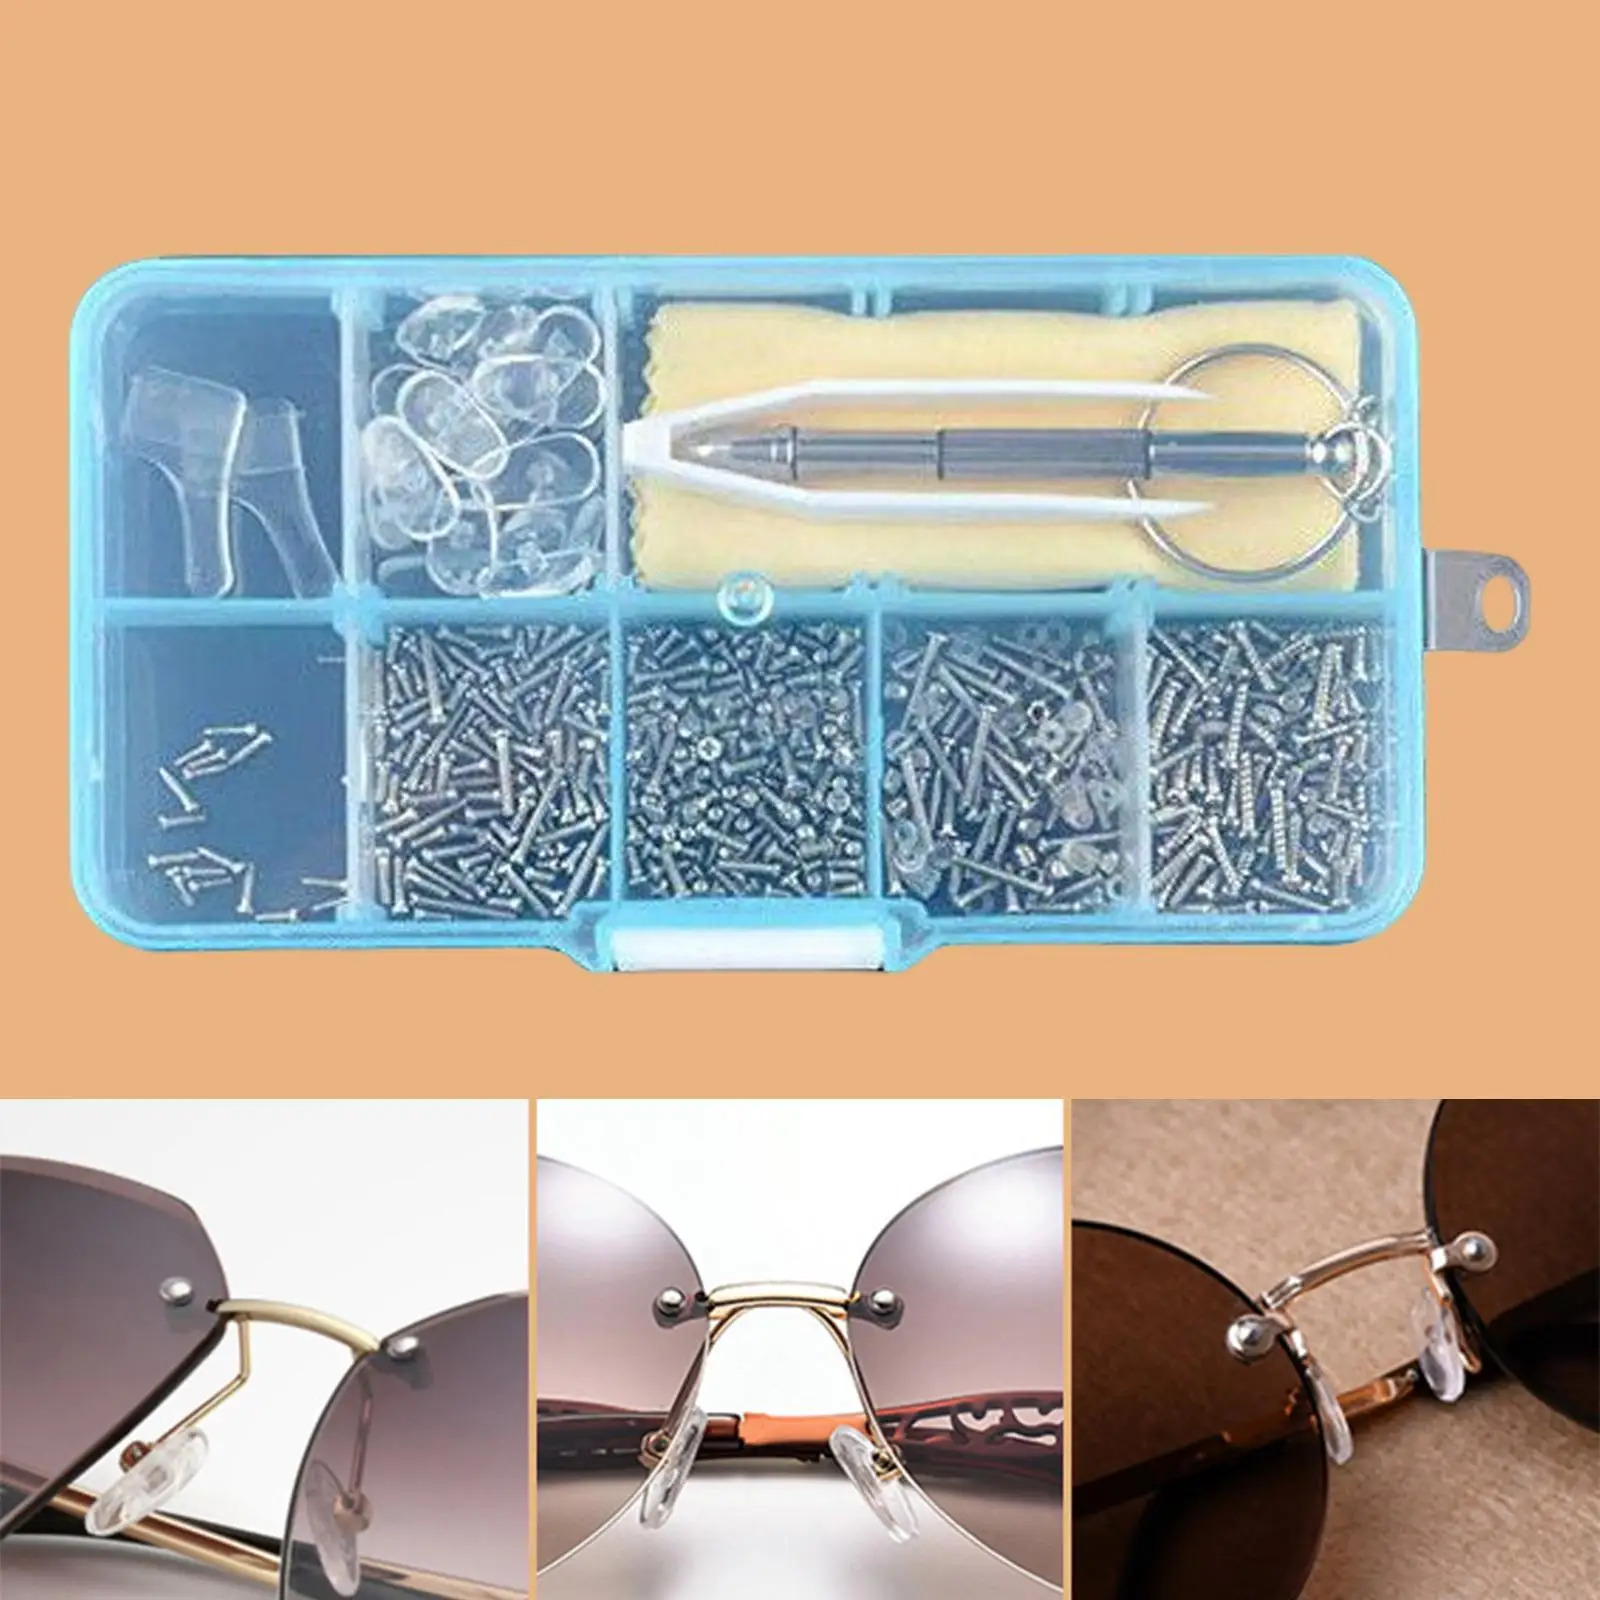 Eyeglass Assortment Repair Tool Set, 500Pcs Screws Hook Tweezers Glasses Cloth Screwdriver Nose Pads Glasses Repair